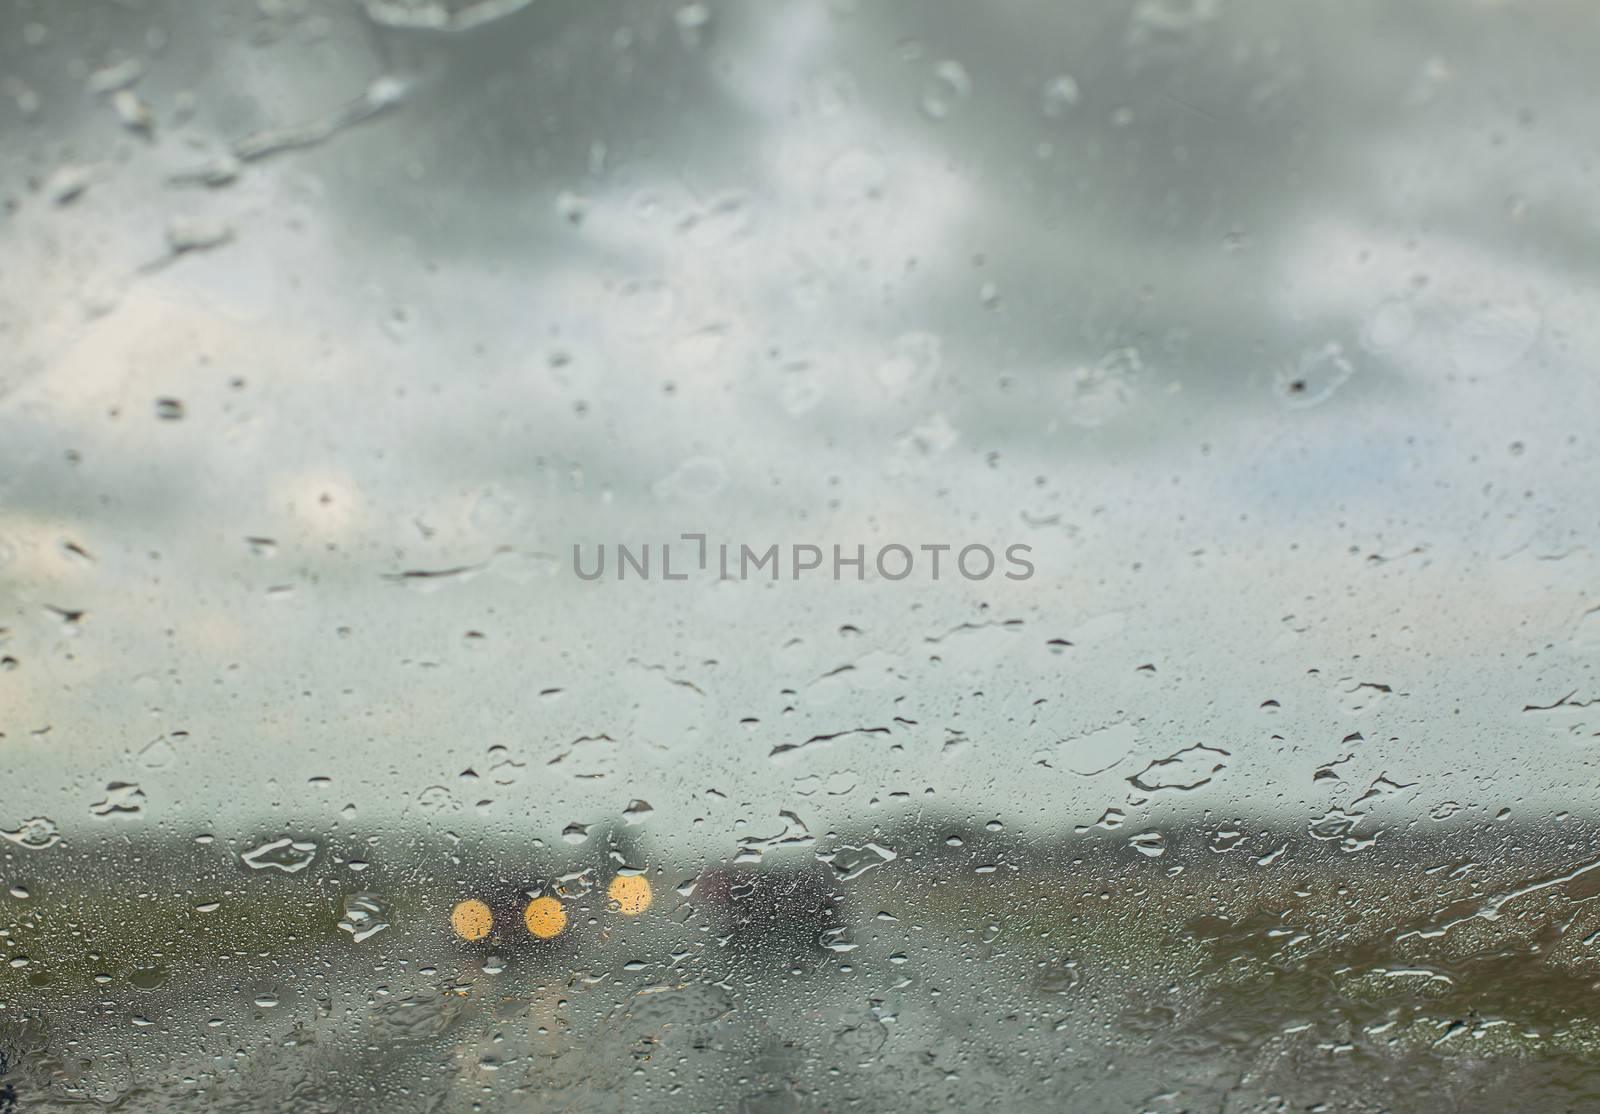 Water drops on a car window